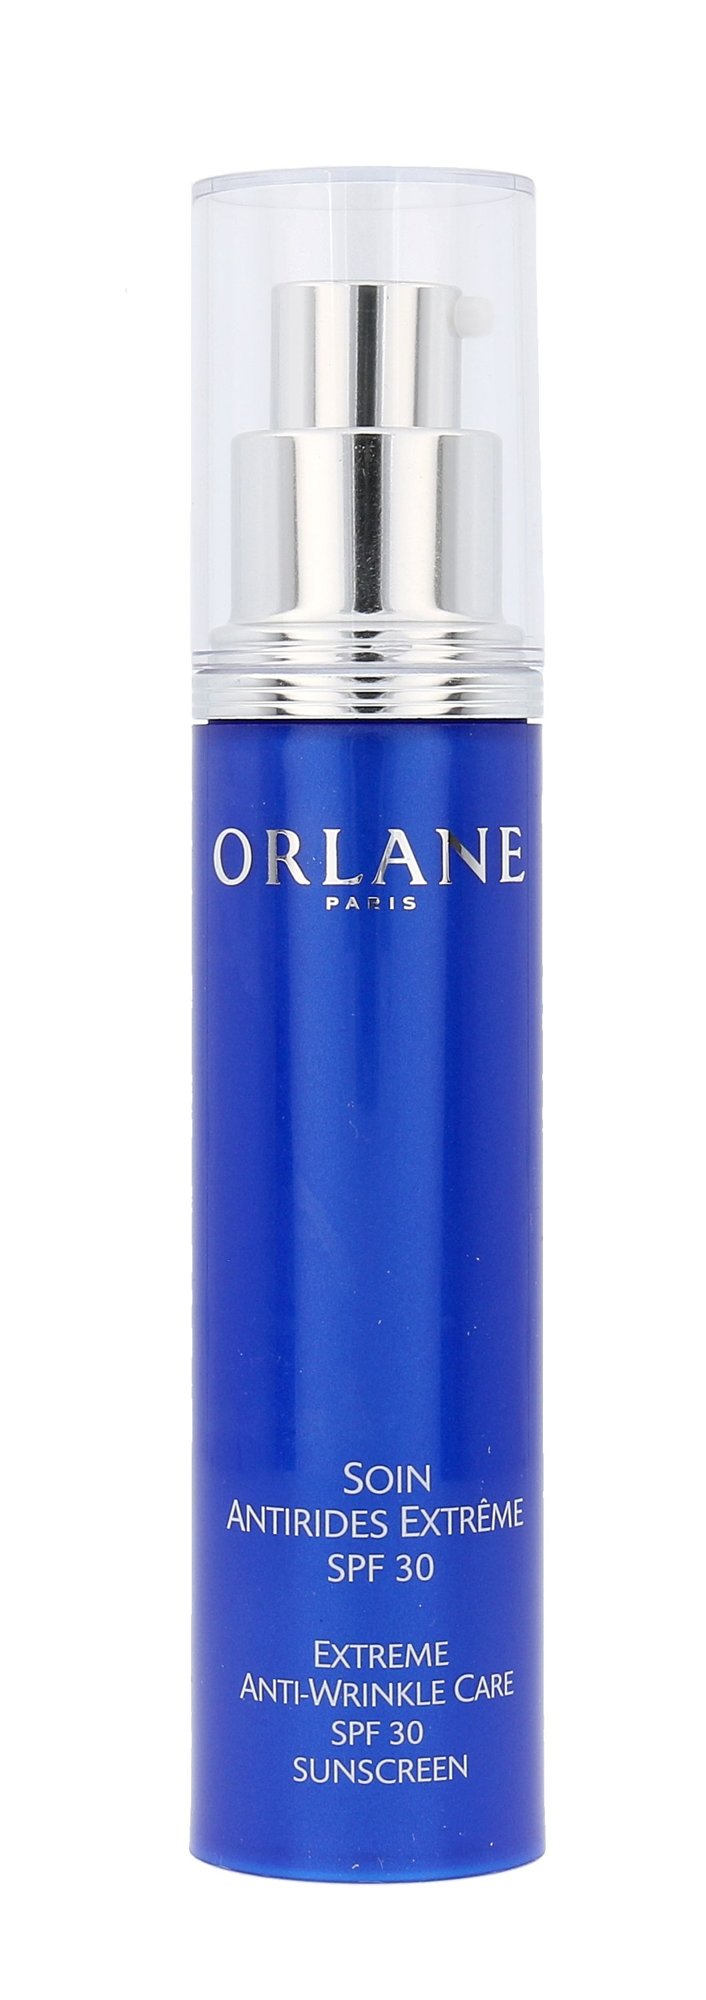 Orlane Extreme Line-Reducing Extreme Anti-Wrinkle Care SPF30 50ml Veido serumas